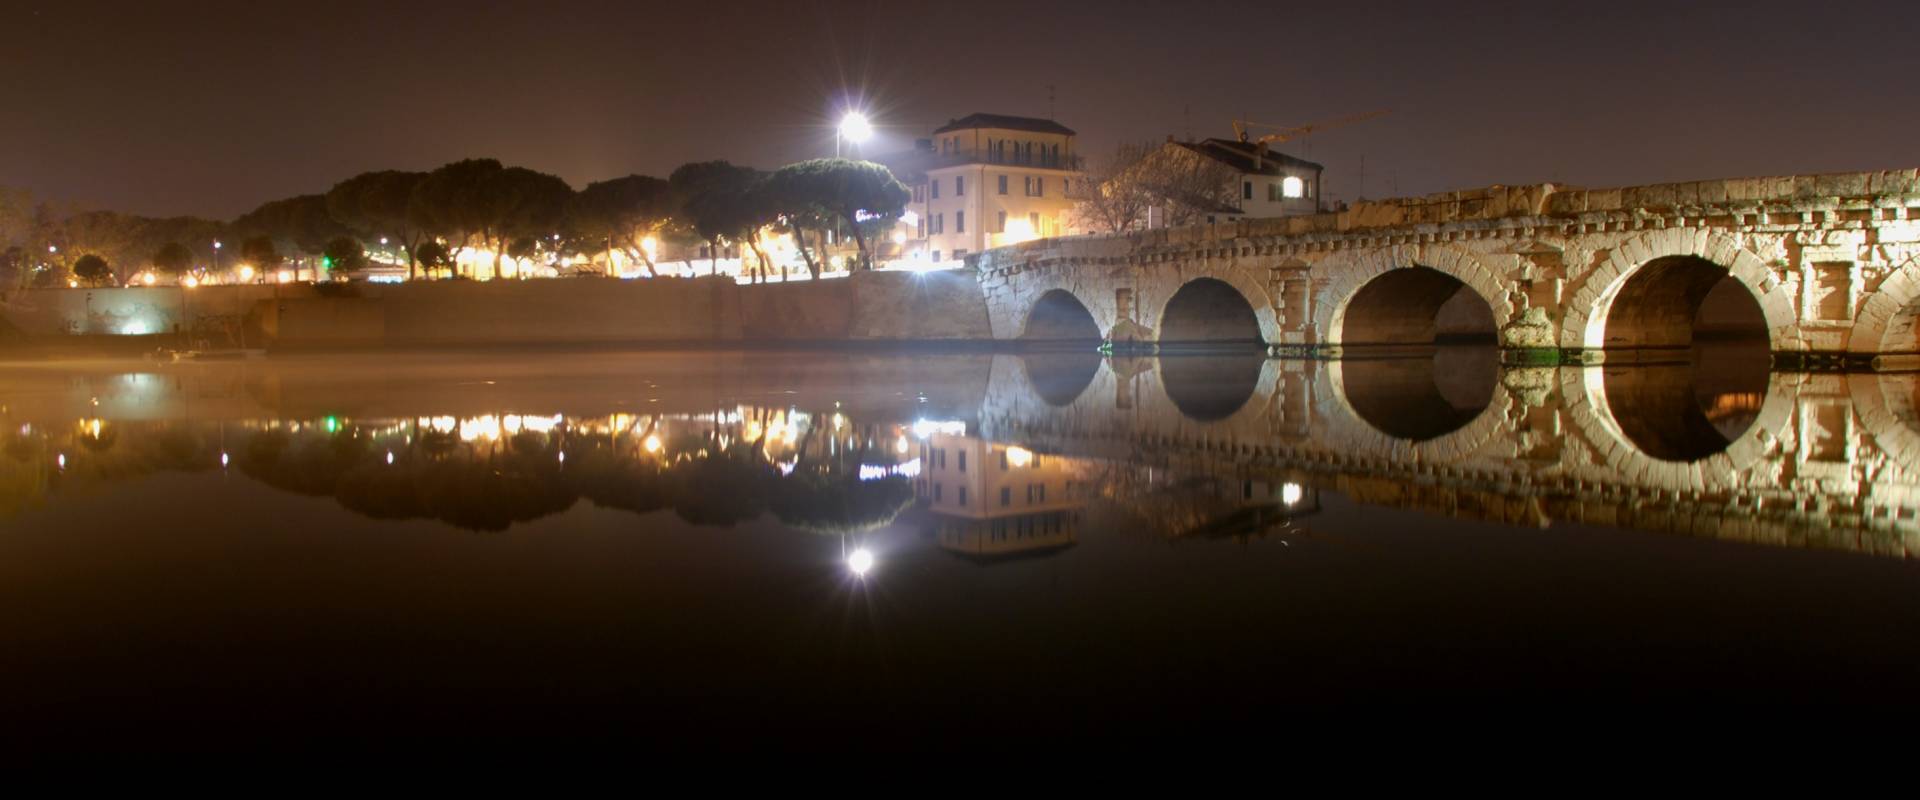 Ponte Tiberio night photo by Scorpione 68